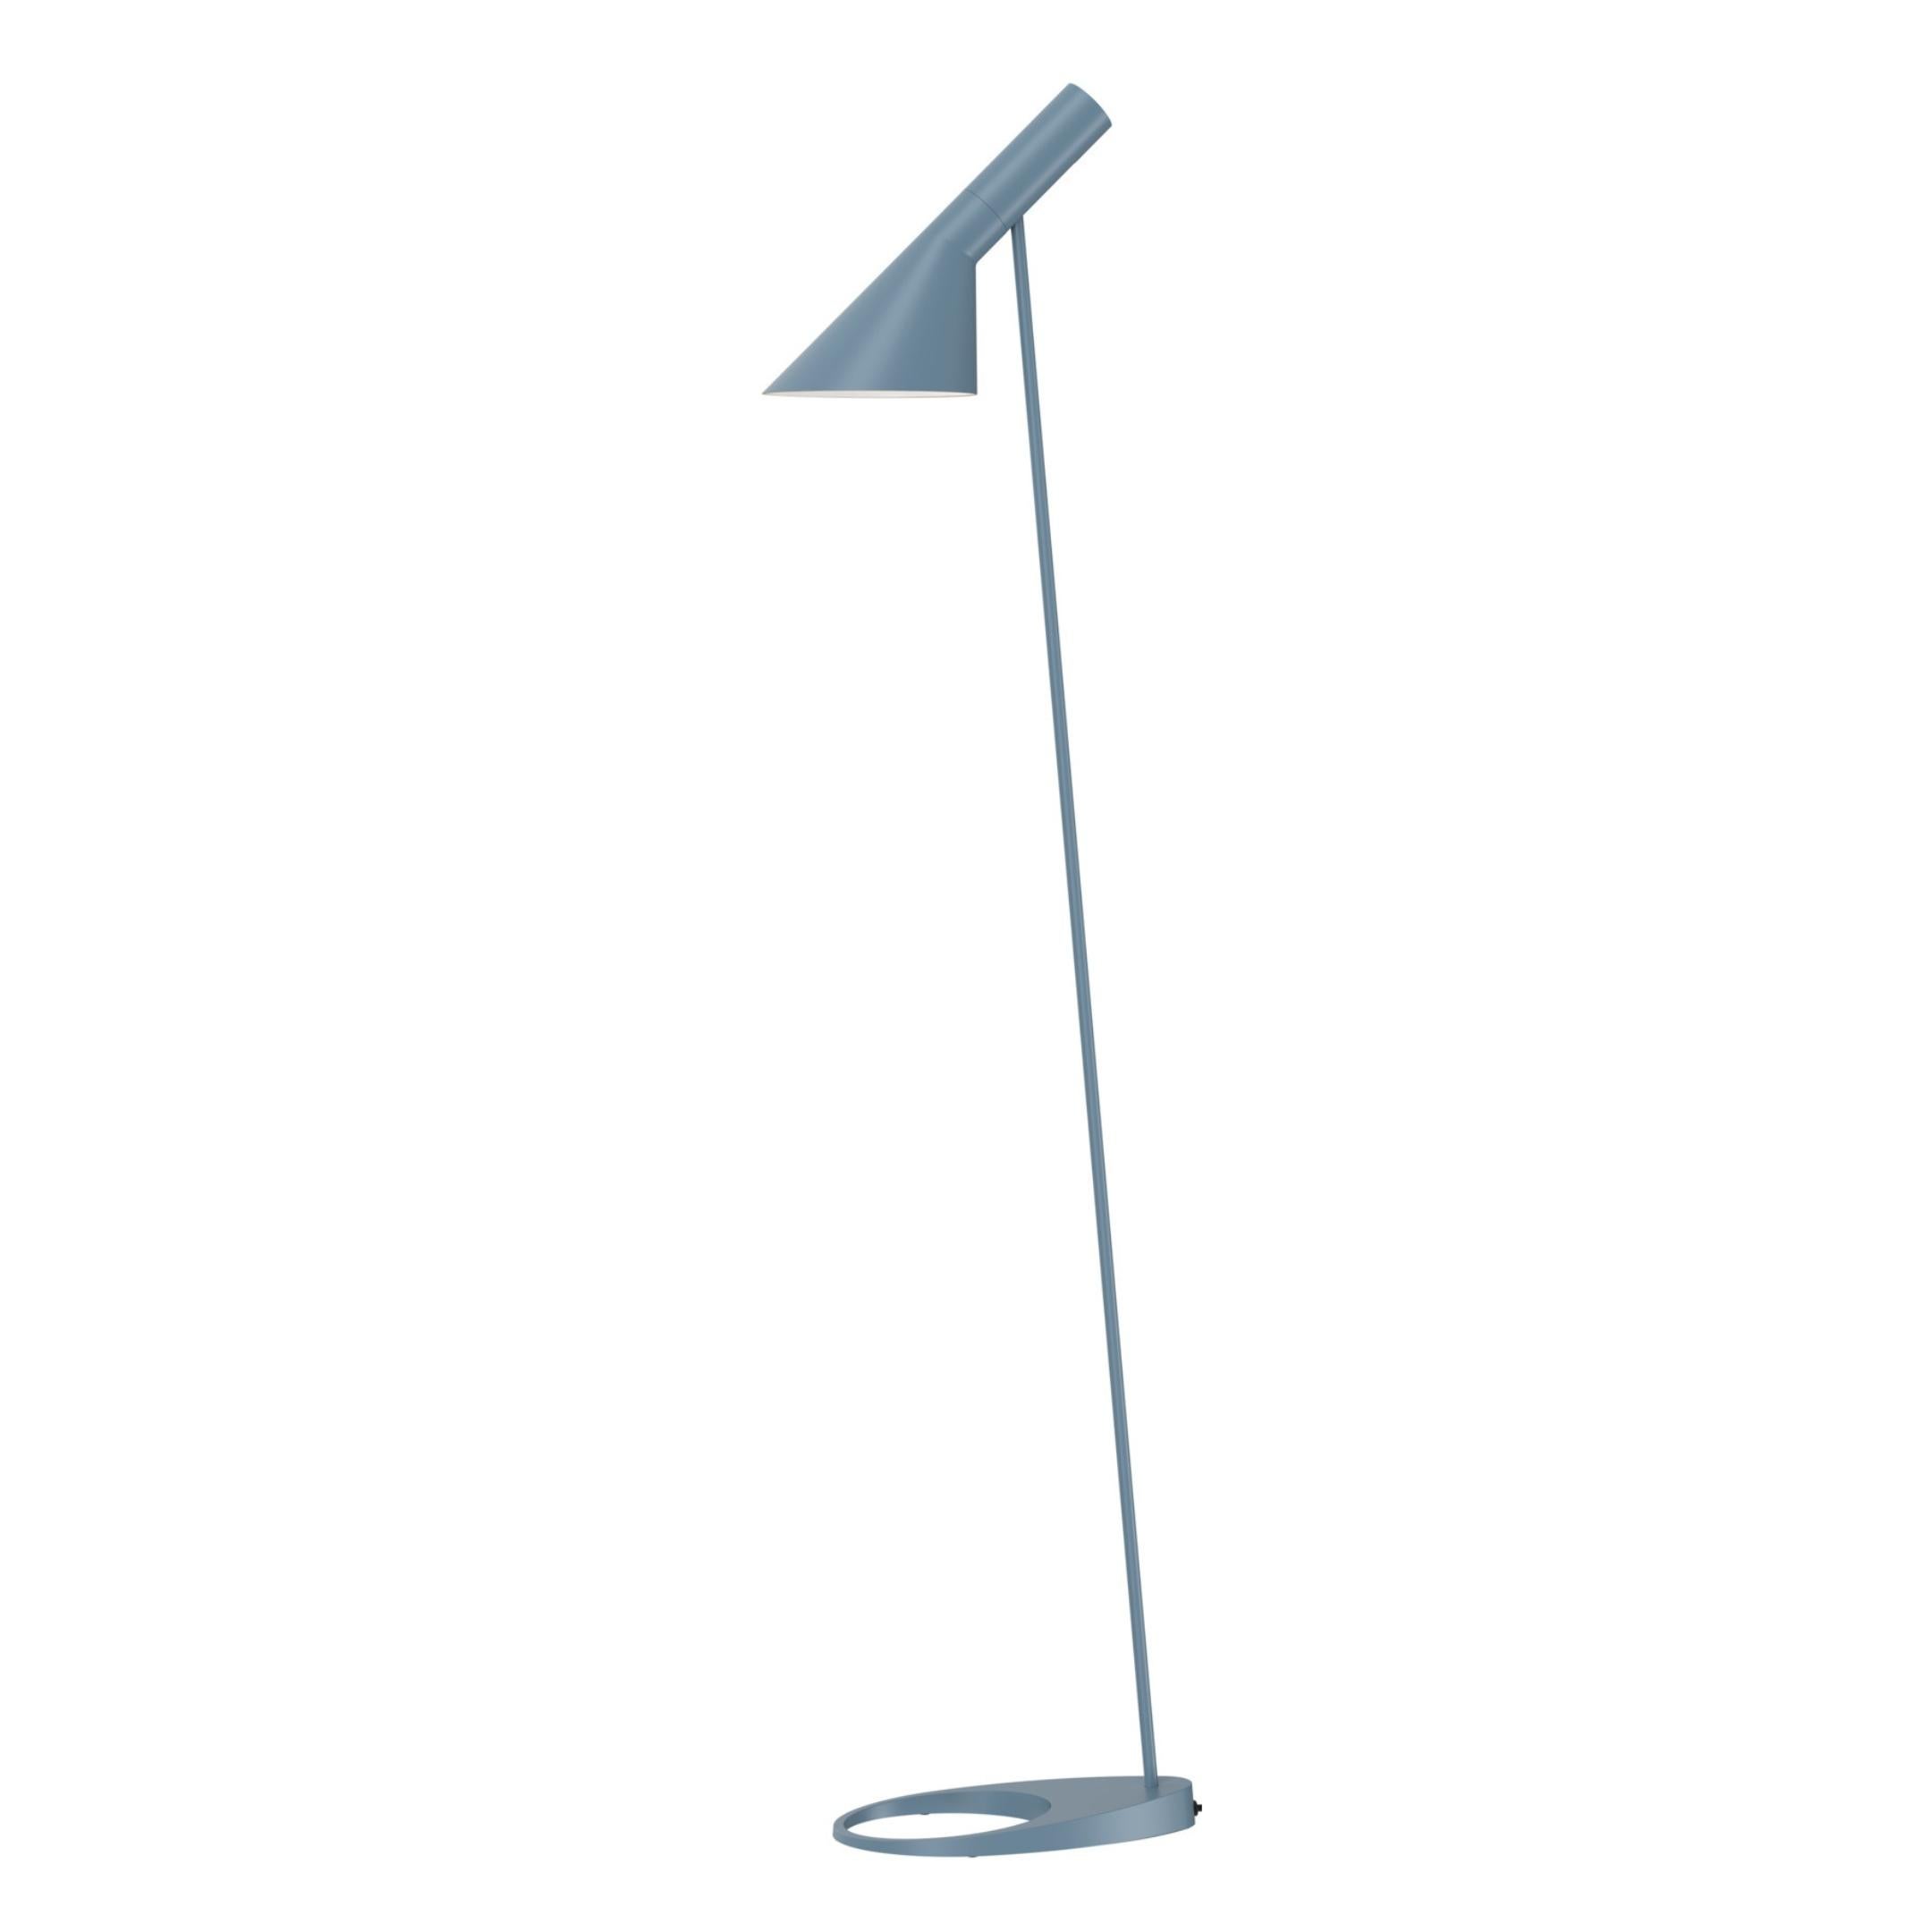 Arne Jacobsen AJ Floor Lamp in Soft Lemon for Louis Poulsen For Sale 4